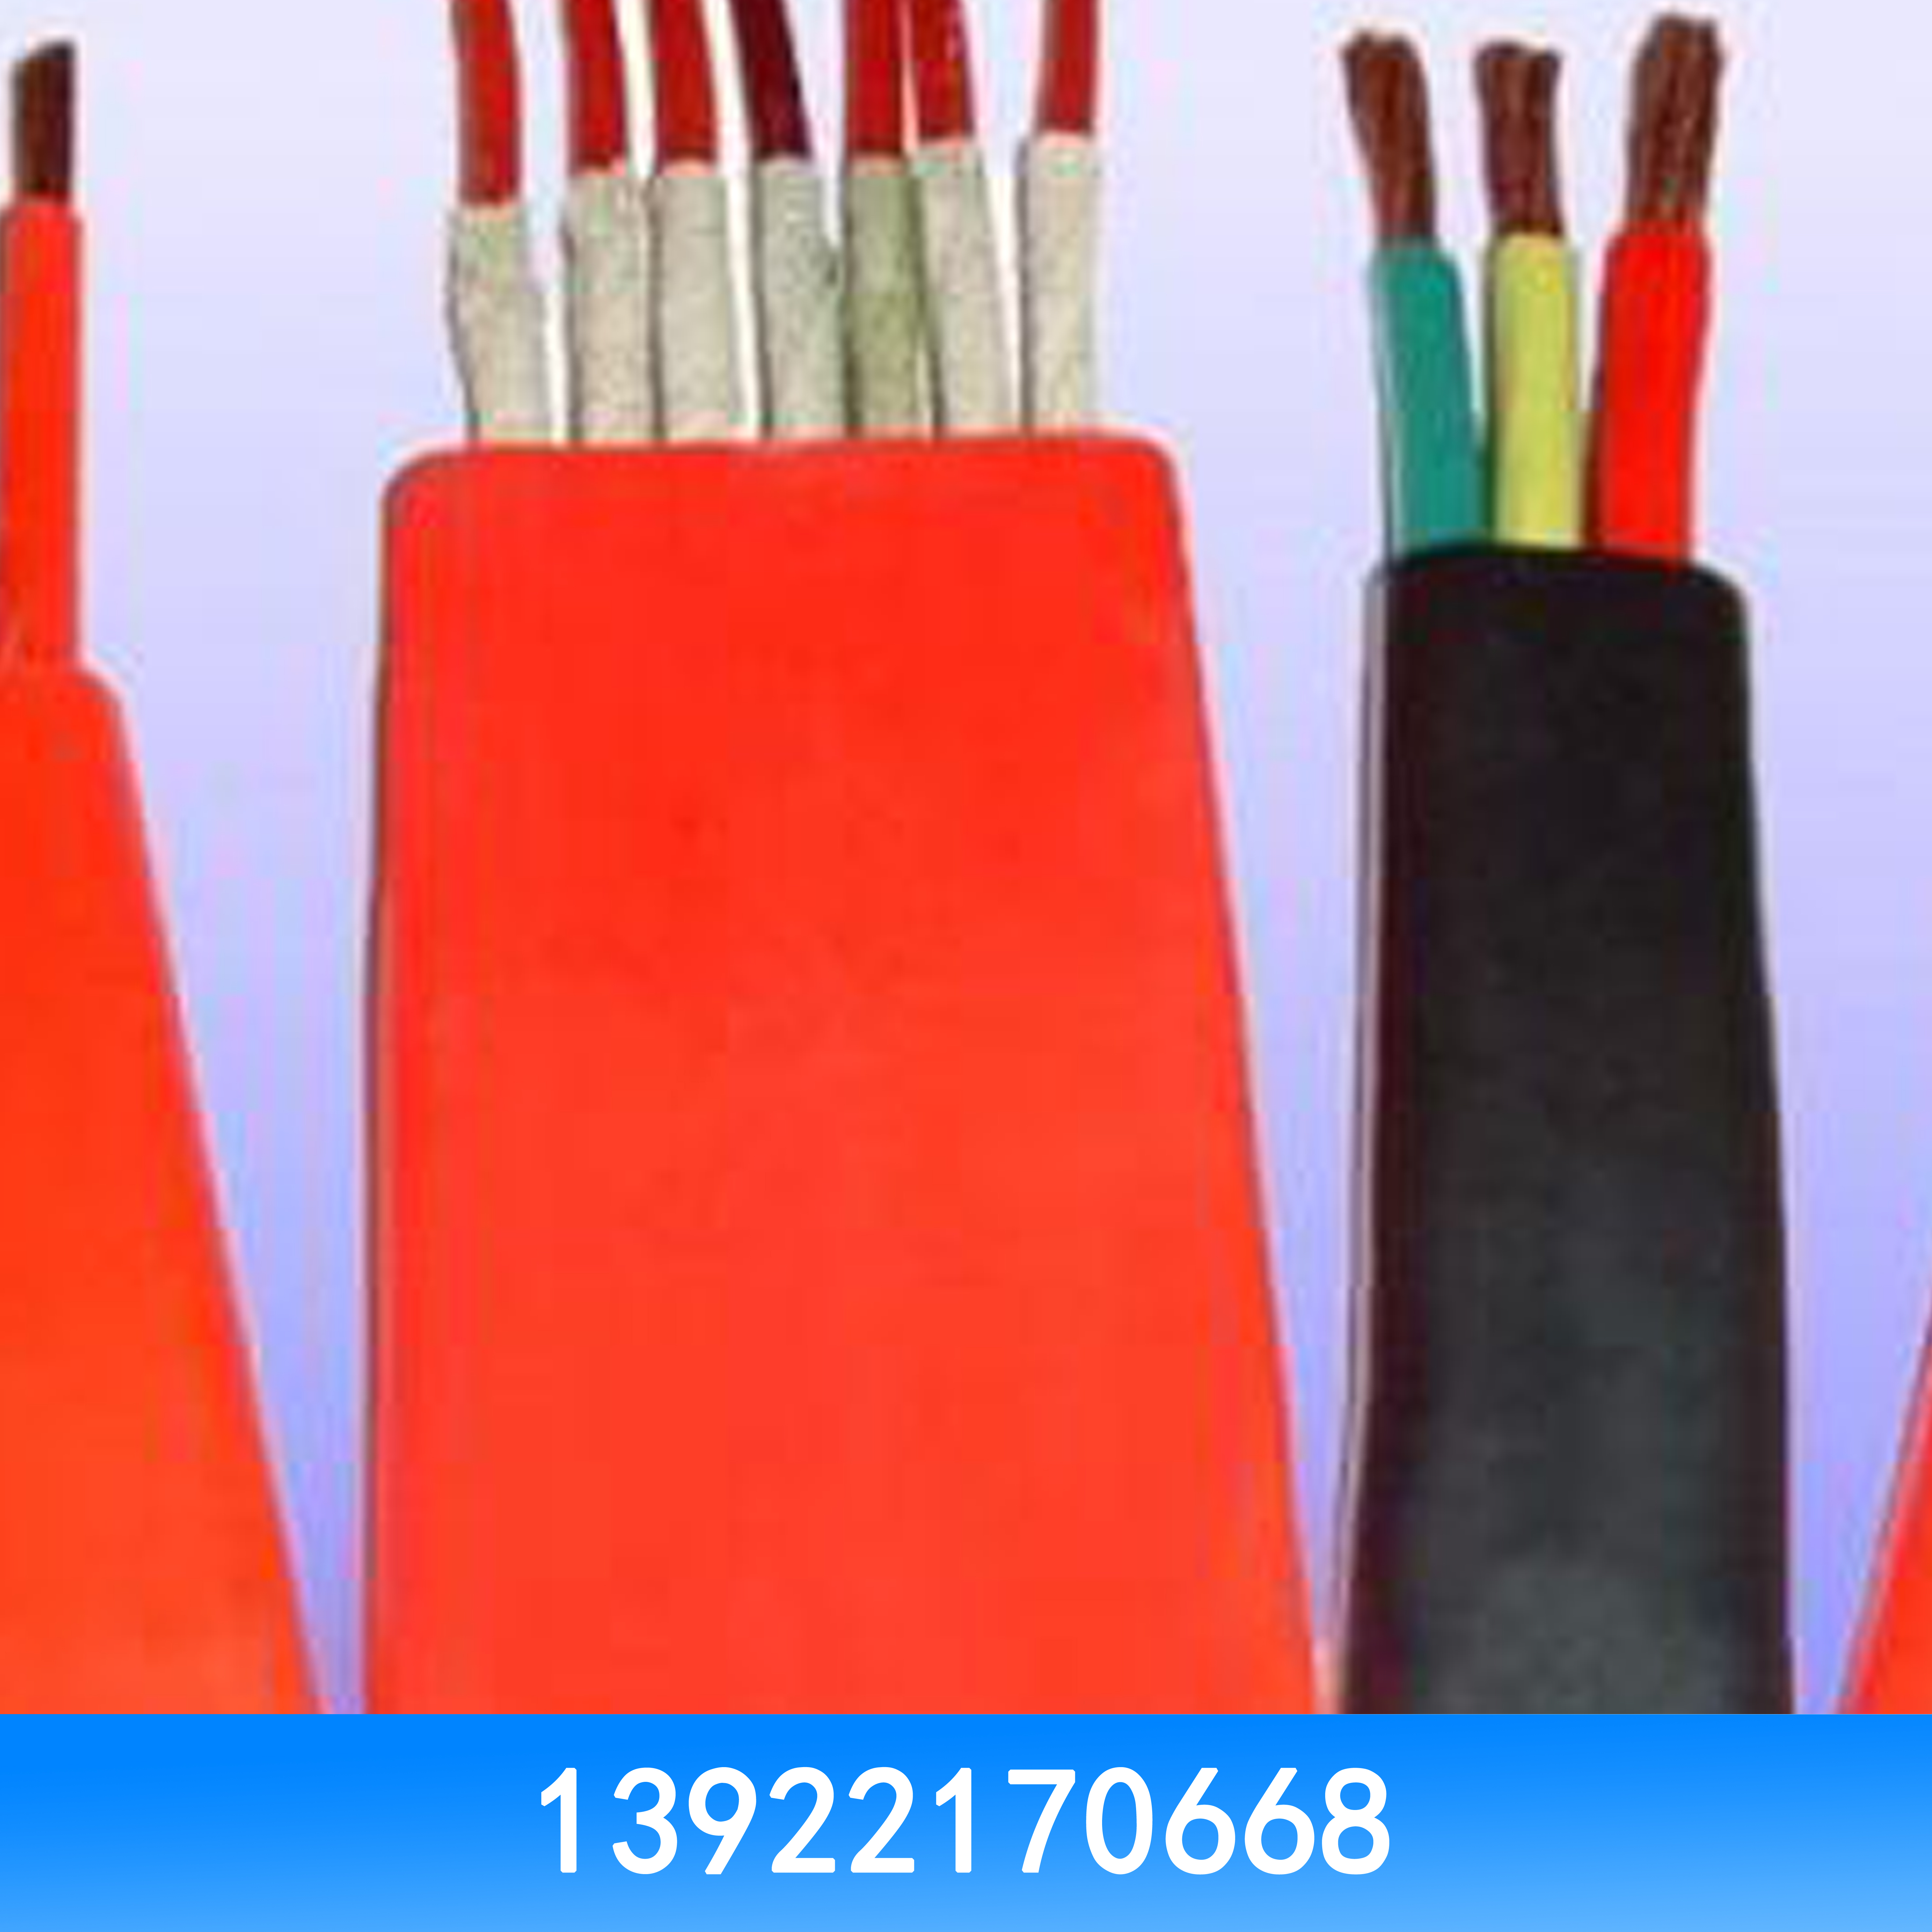 电线电缆回收 电线电缆回收价格 电线电缆回收批发 电线电缆回收厂家